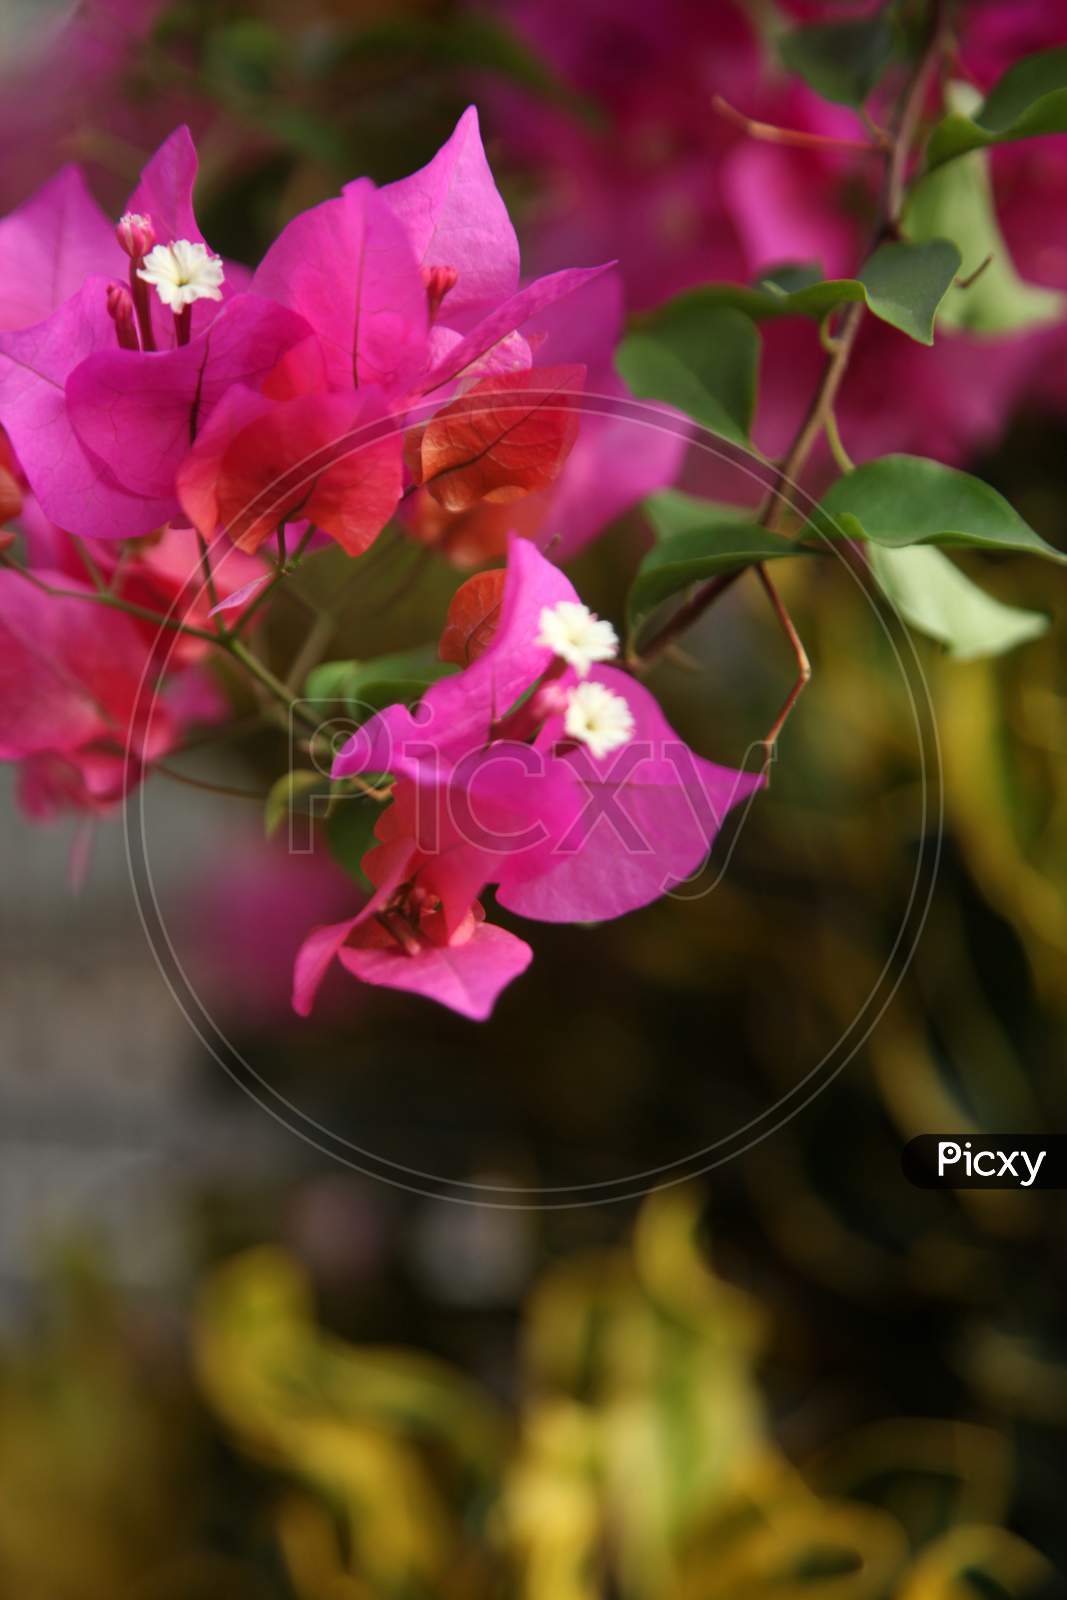 Selective Focus on bougainvillea flowers